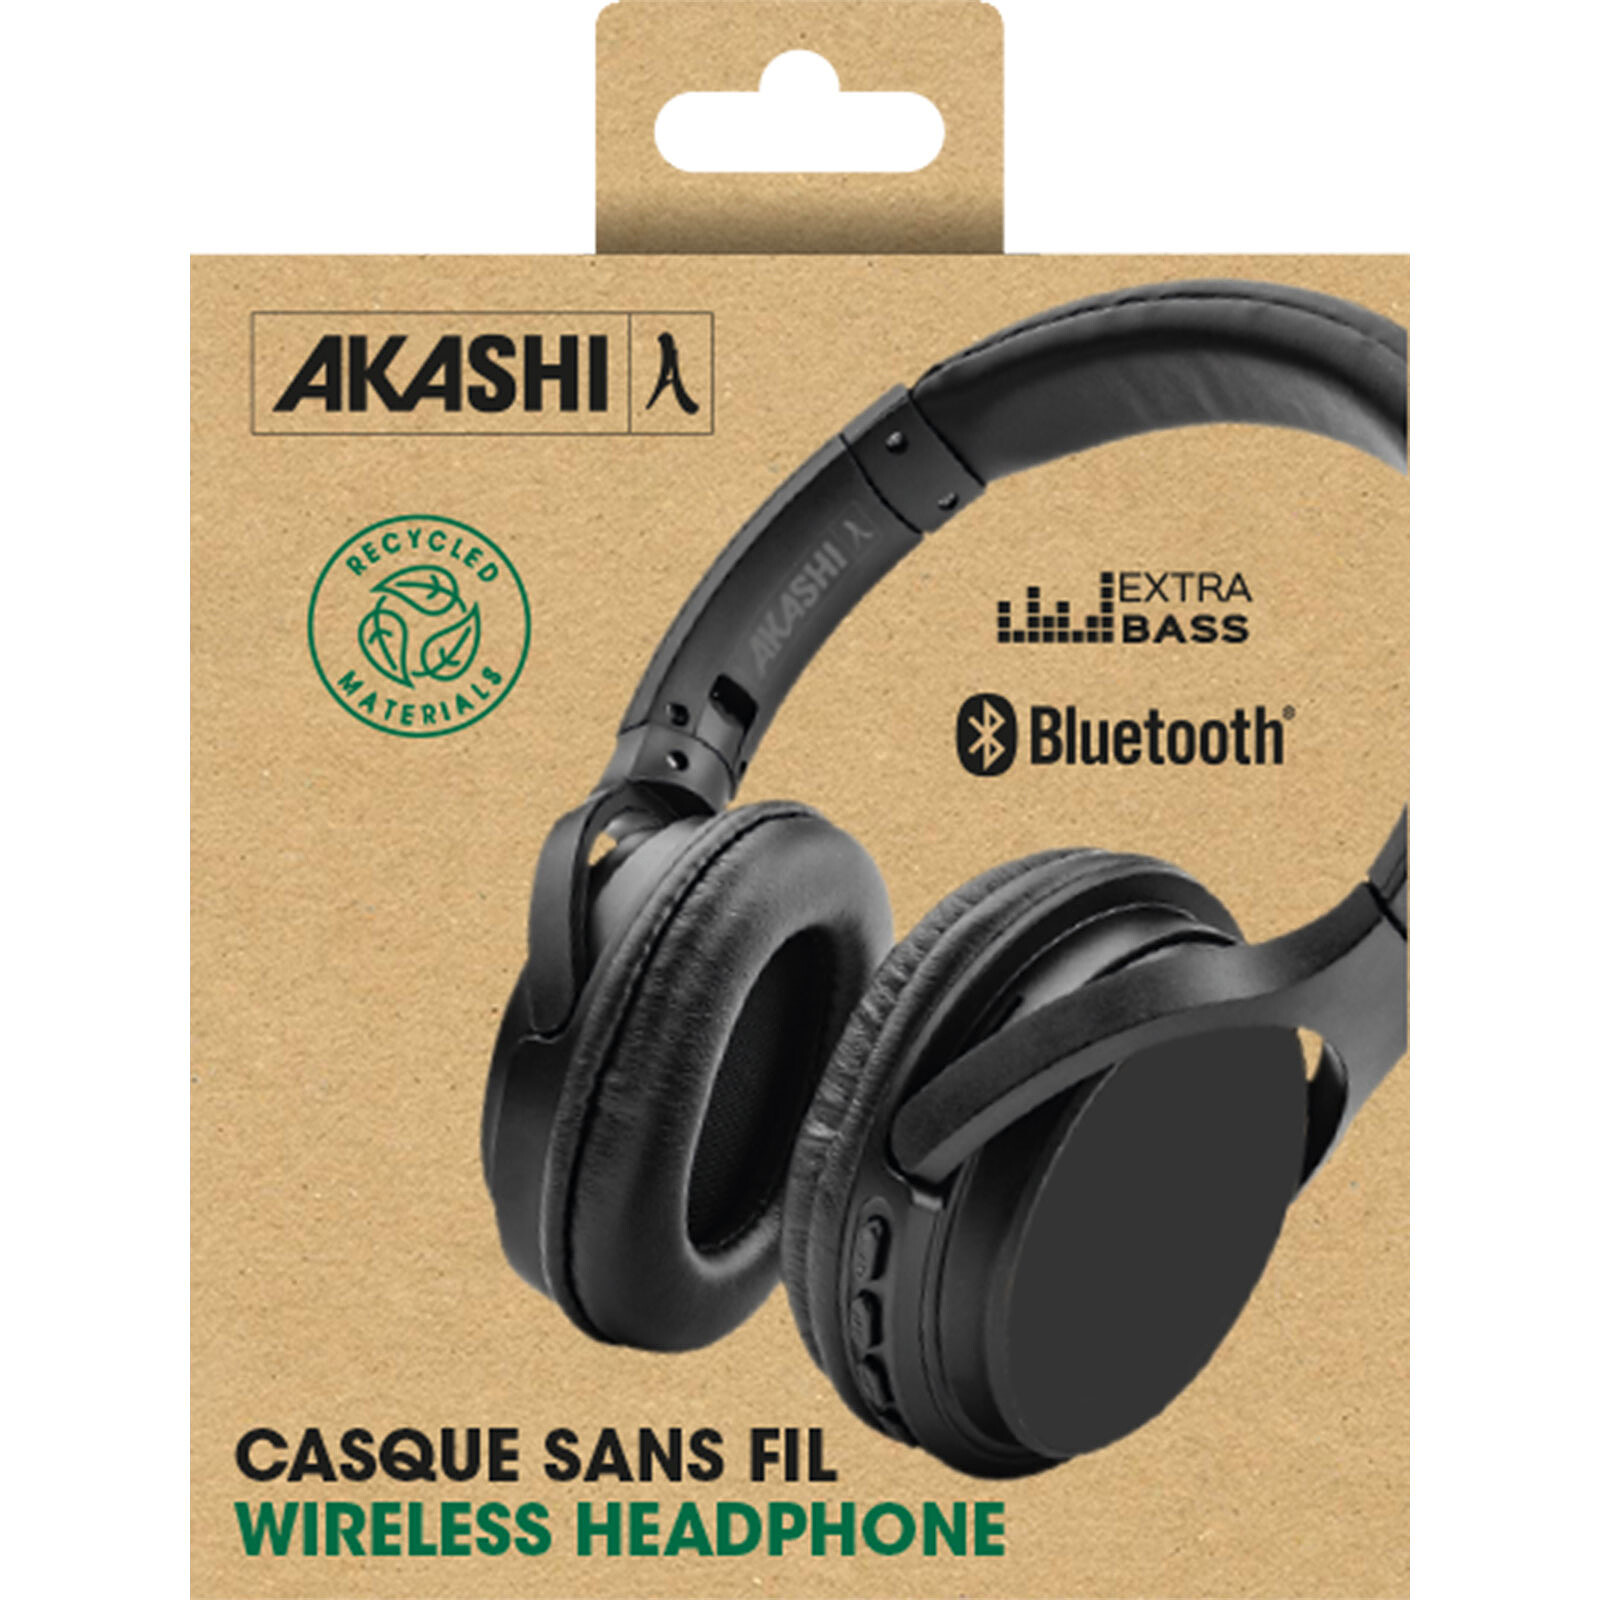 Casque Bluetooth + Filaire Pliable, à Réduction de bruit, 30h d'Autonomie  Akashi - Noir - Français